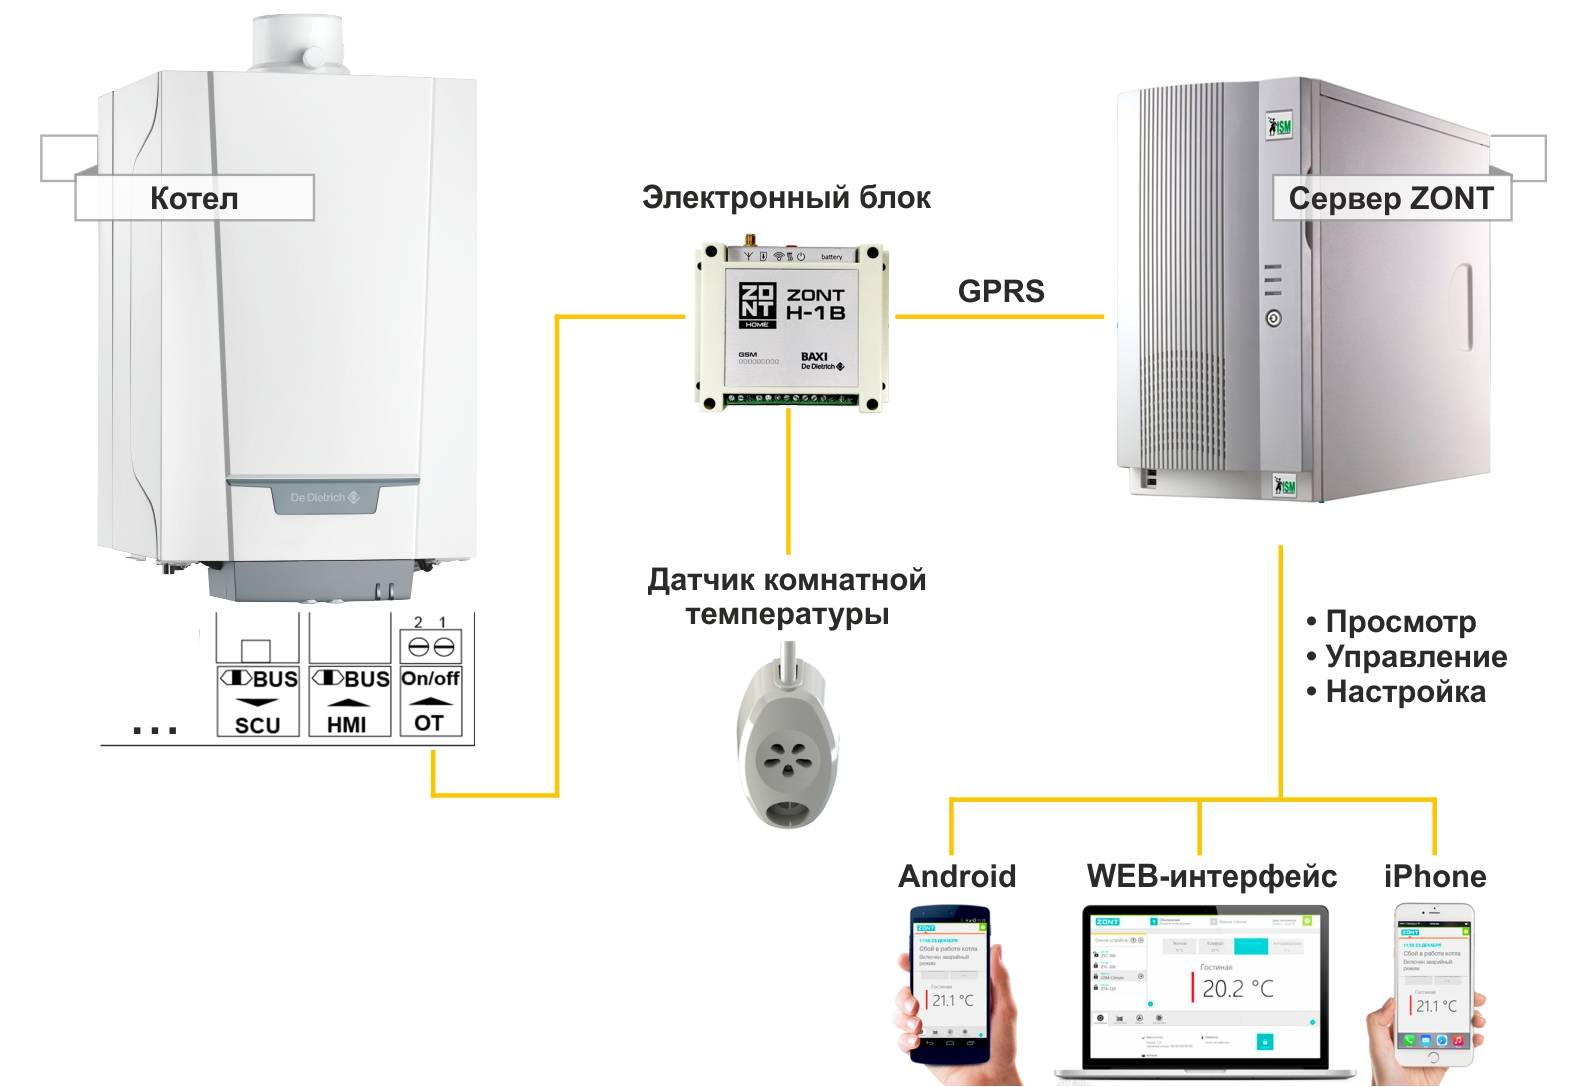 Gsm для газового котла: дистанционное управление отоплением со смартфона для частного дома